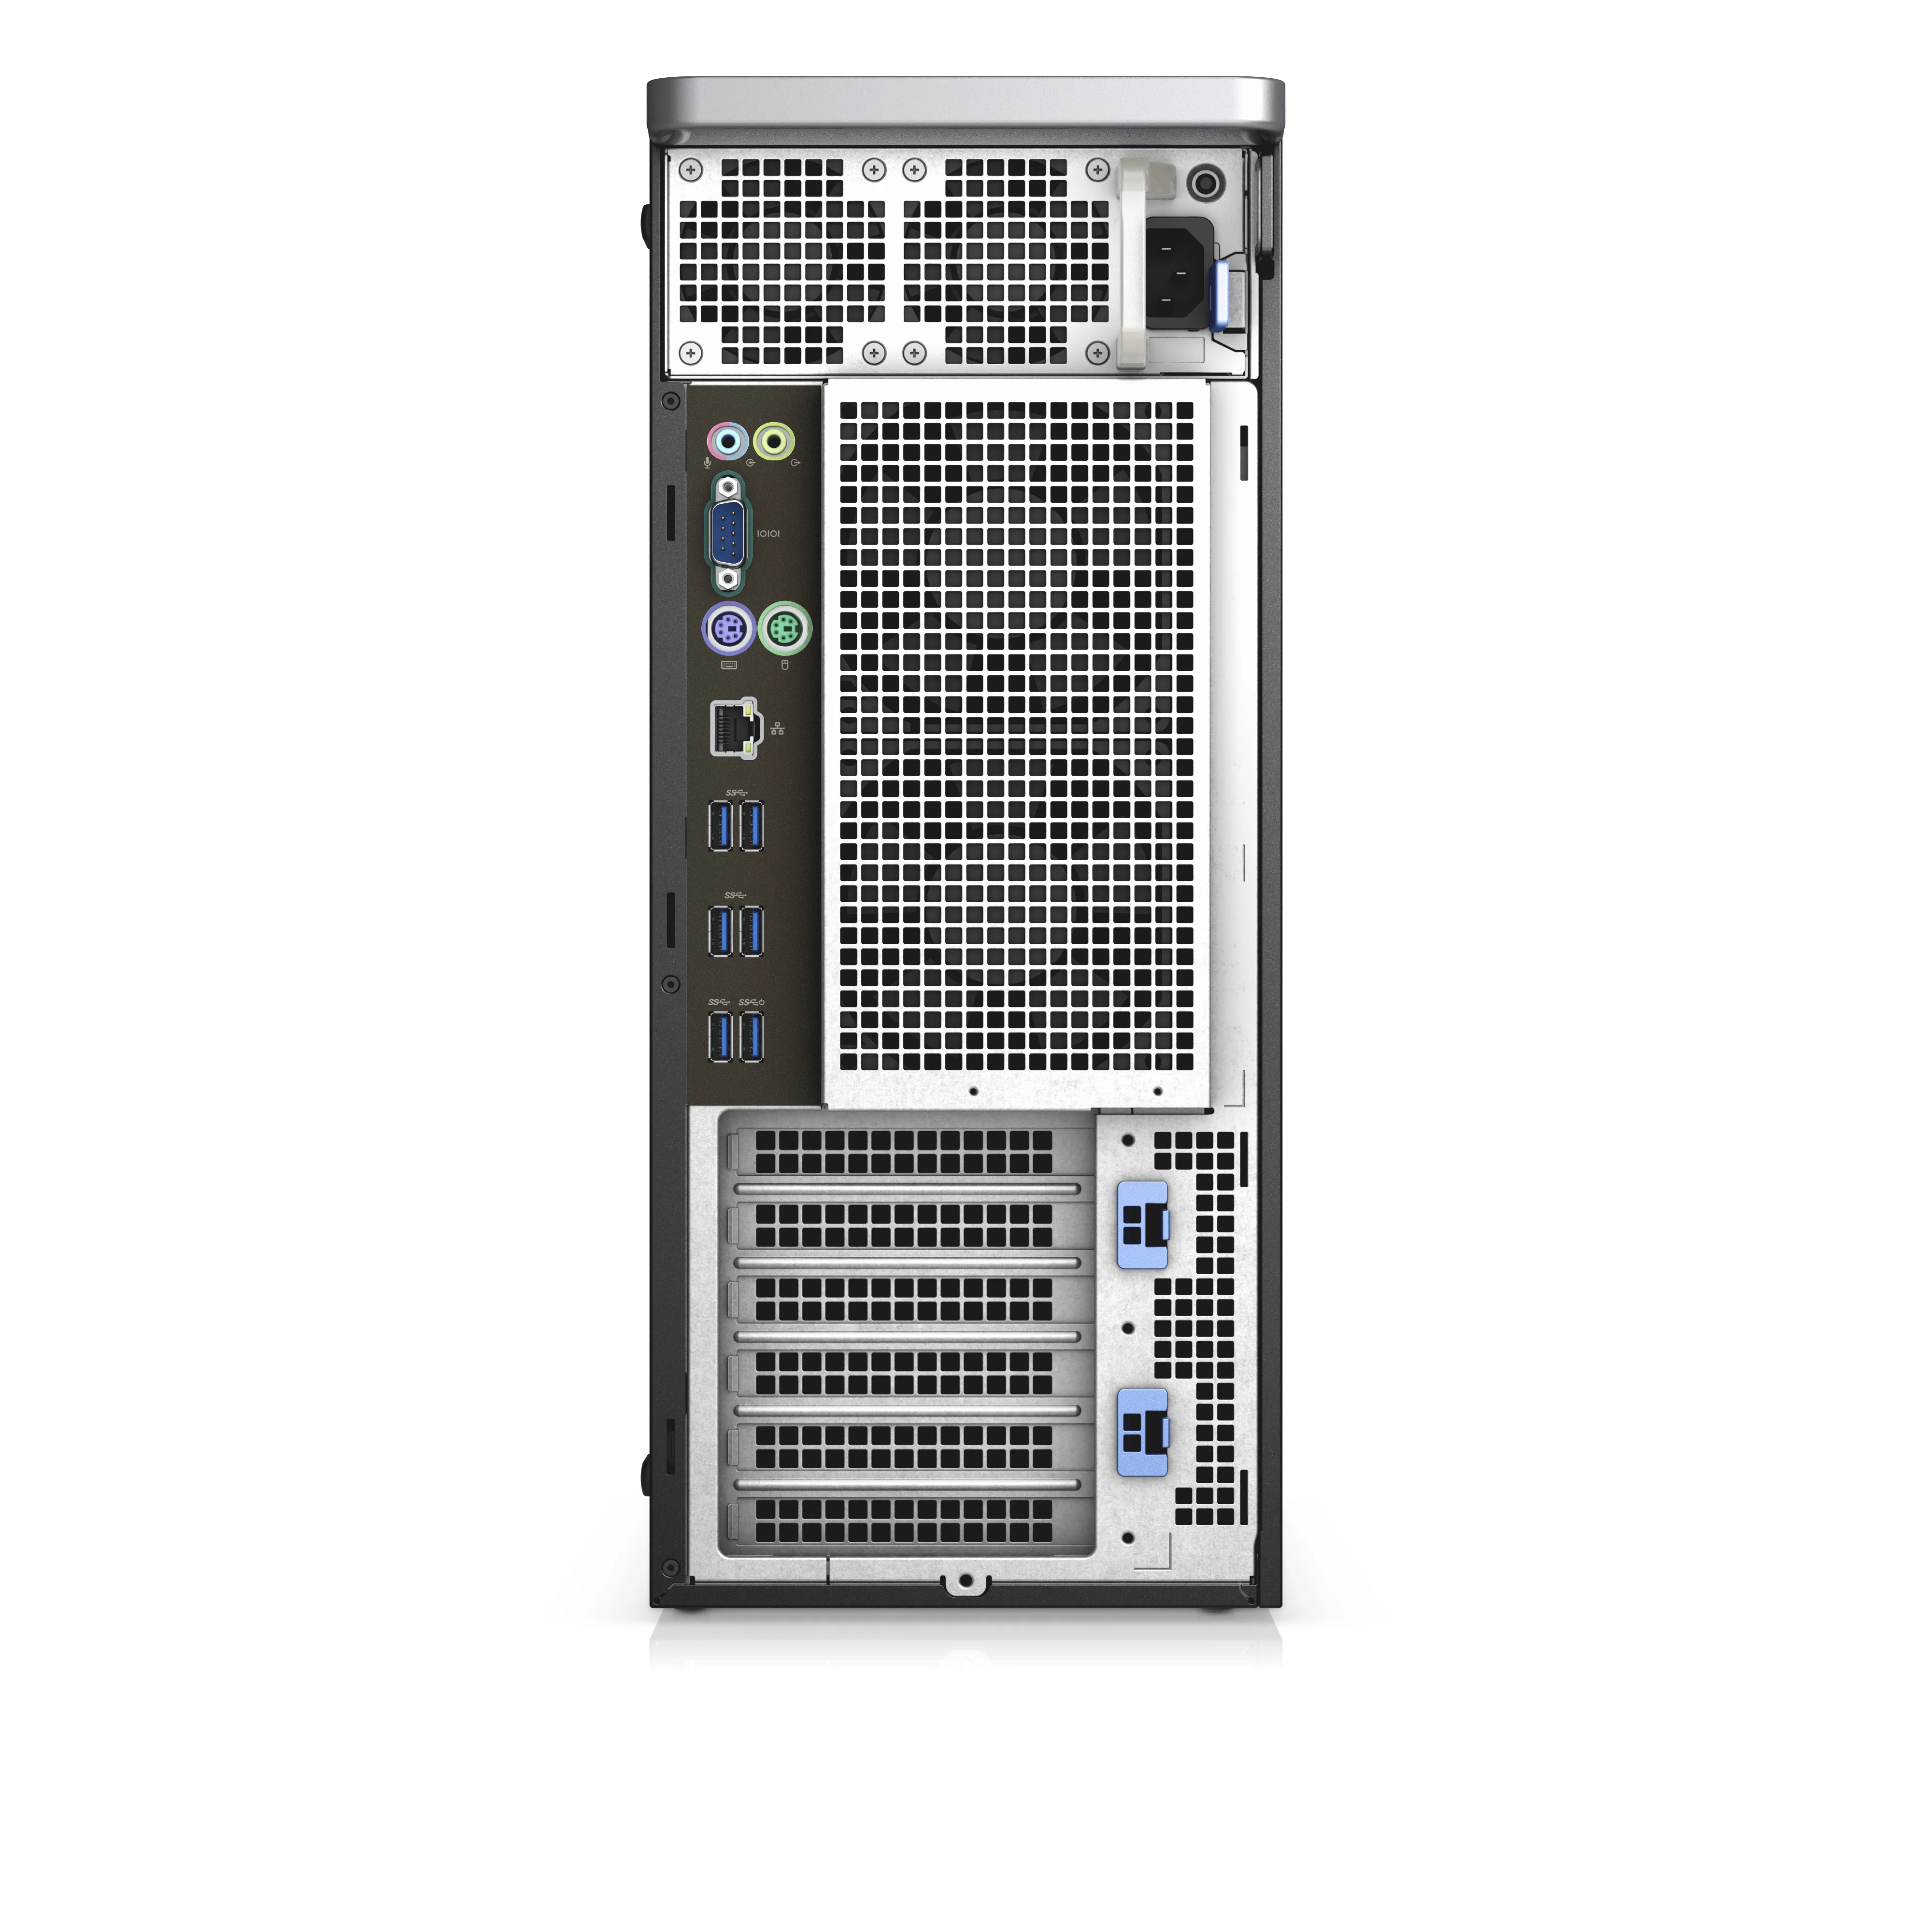 Dell Precision 5820 Tower - Xeon W-2235 - 32GB RAM - 512GB SSD - Win 10 Pro